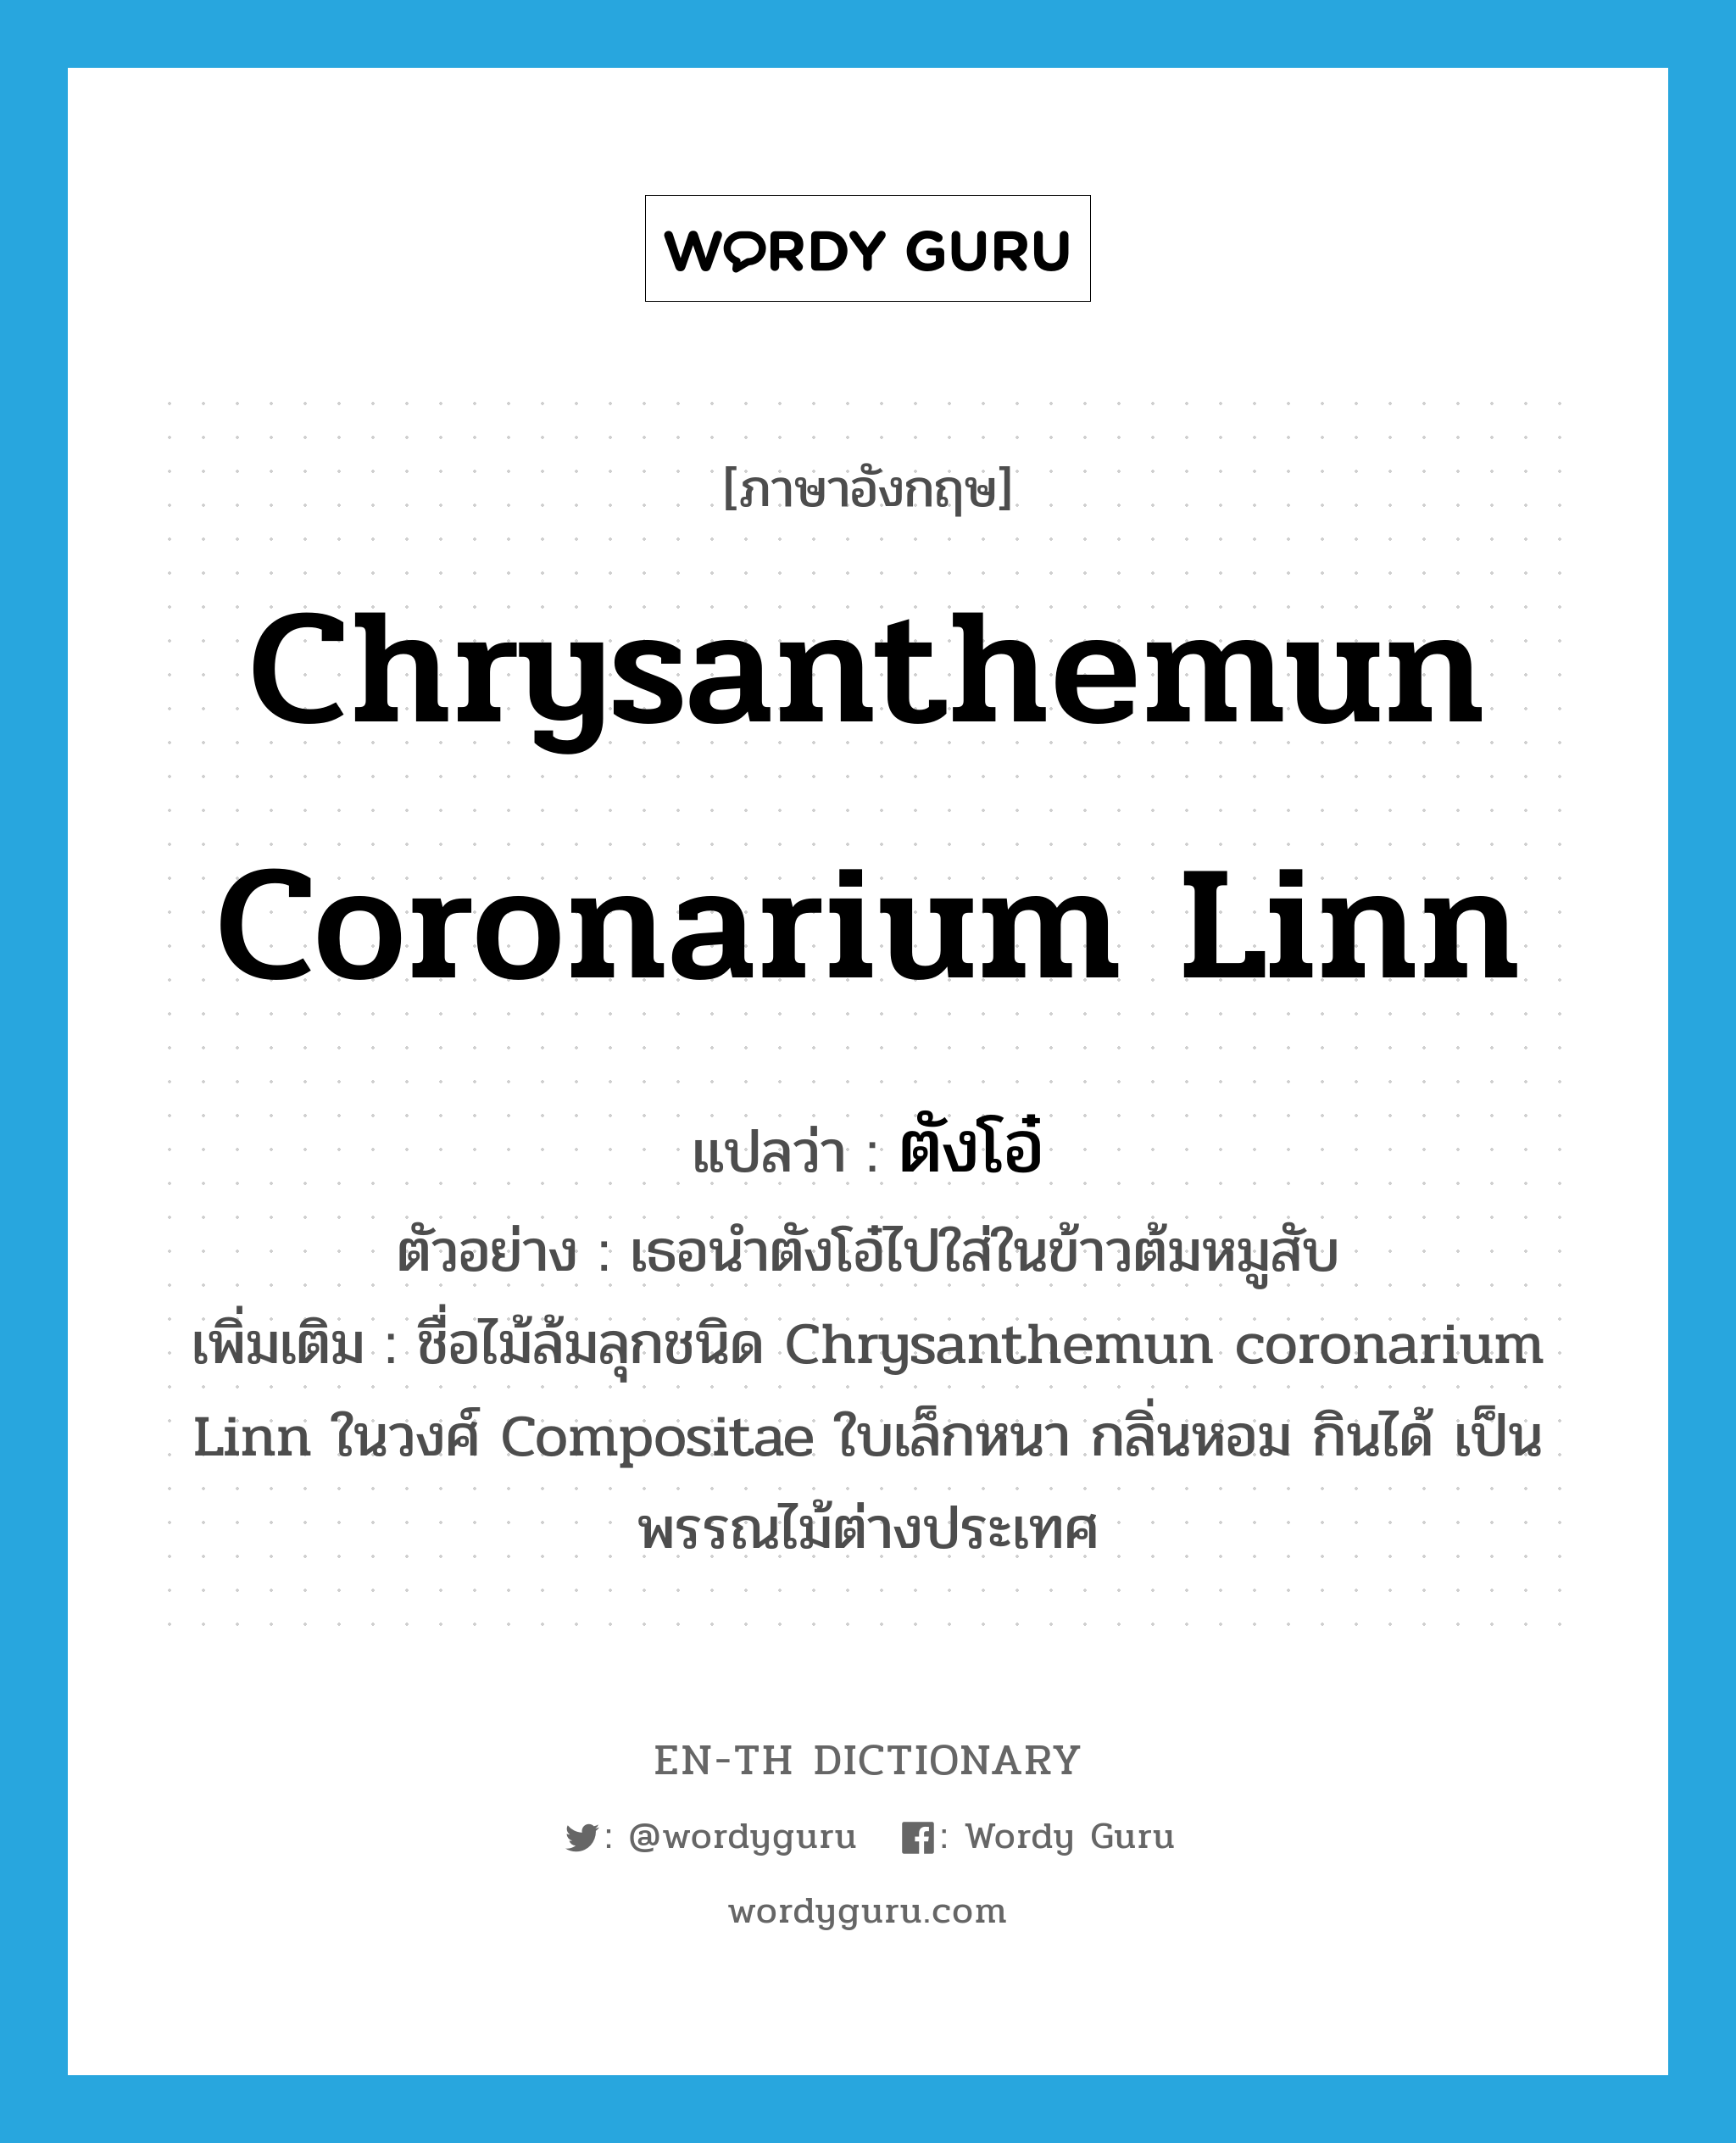 ตังโอ๋ ภาษาอังกฤษ?, คำศัพท์ภาษาอังกฤษ ตังโอ๋ แปลว่า Chrysanthemun coronarium Linn ประเภท N ตัวอย่าง เธอนำตังโอ๋ไปใส่ในข้าวต้มหมูสับ เพิ่มเติม ชื่อไม้ล้มลุกชนิด Chrysanthemun coronarium Linn ในวงศ์ Compositae ใบเล็กหนา กลิ่นหอม กินได้ เป็นพรรณไม้ต่างประเทศ หมวด N